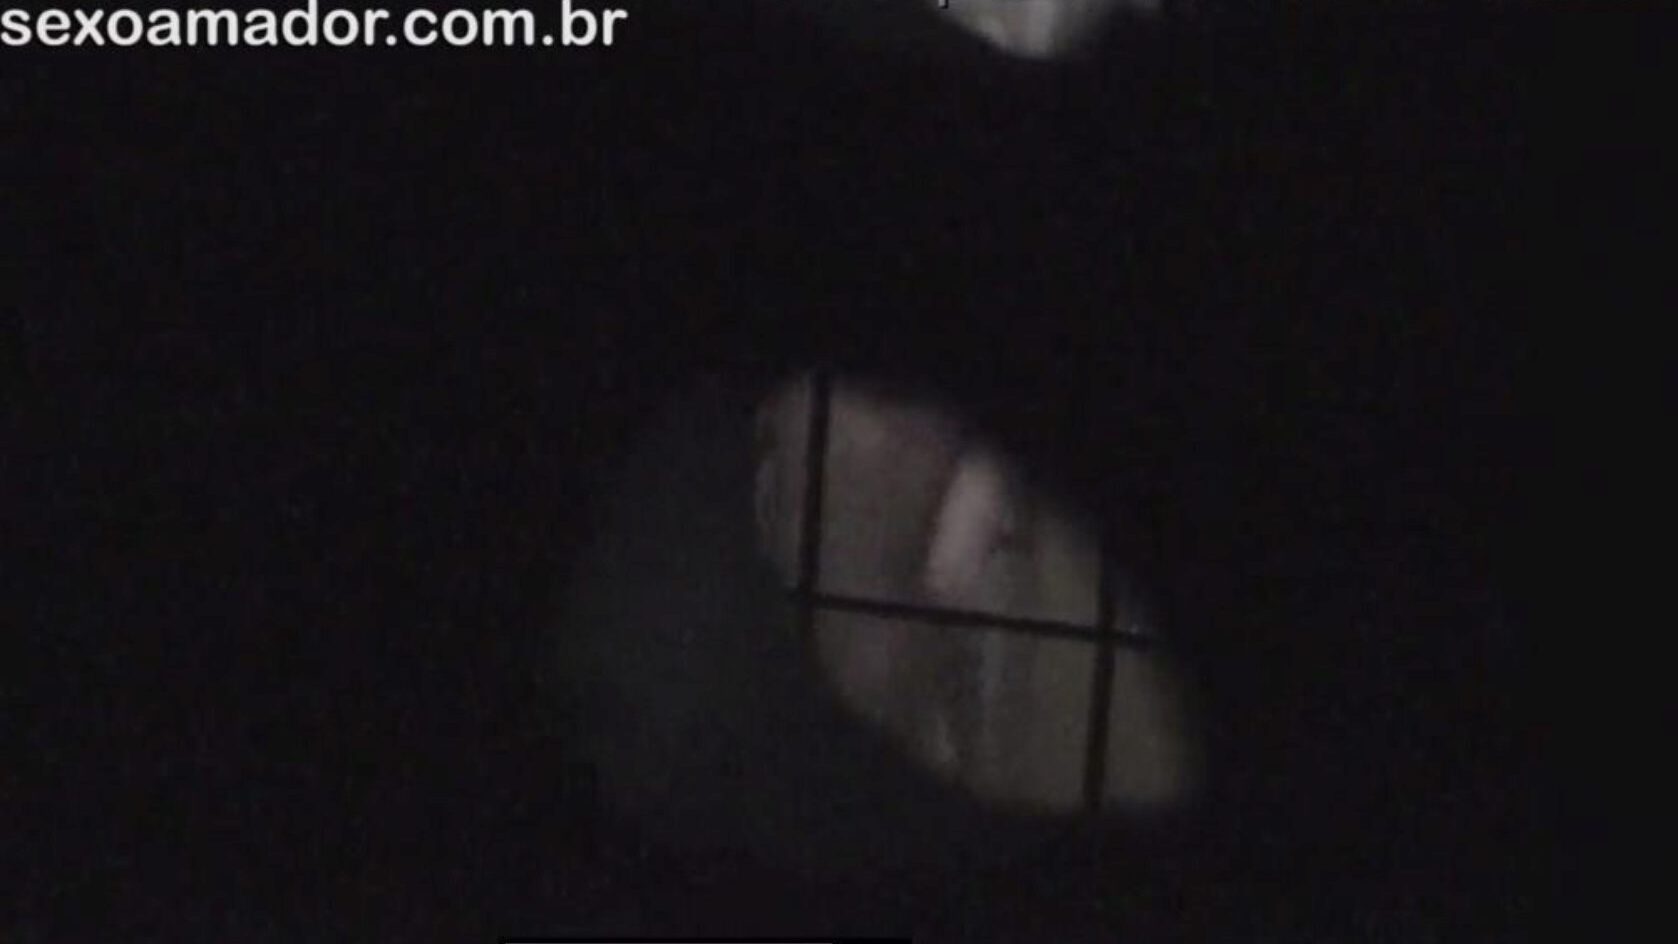 loira é filmada secretamente pelo vizinho voyeur escondido atrás de tijolos ocos